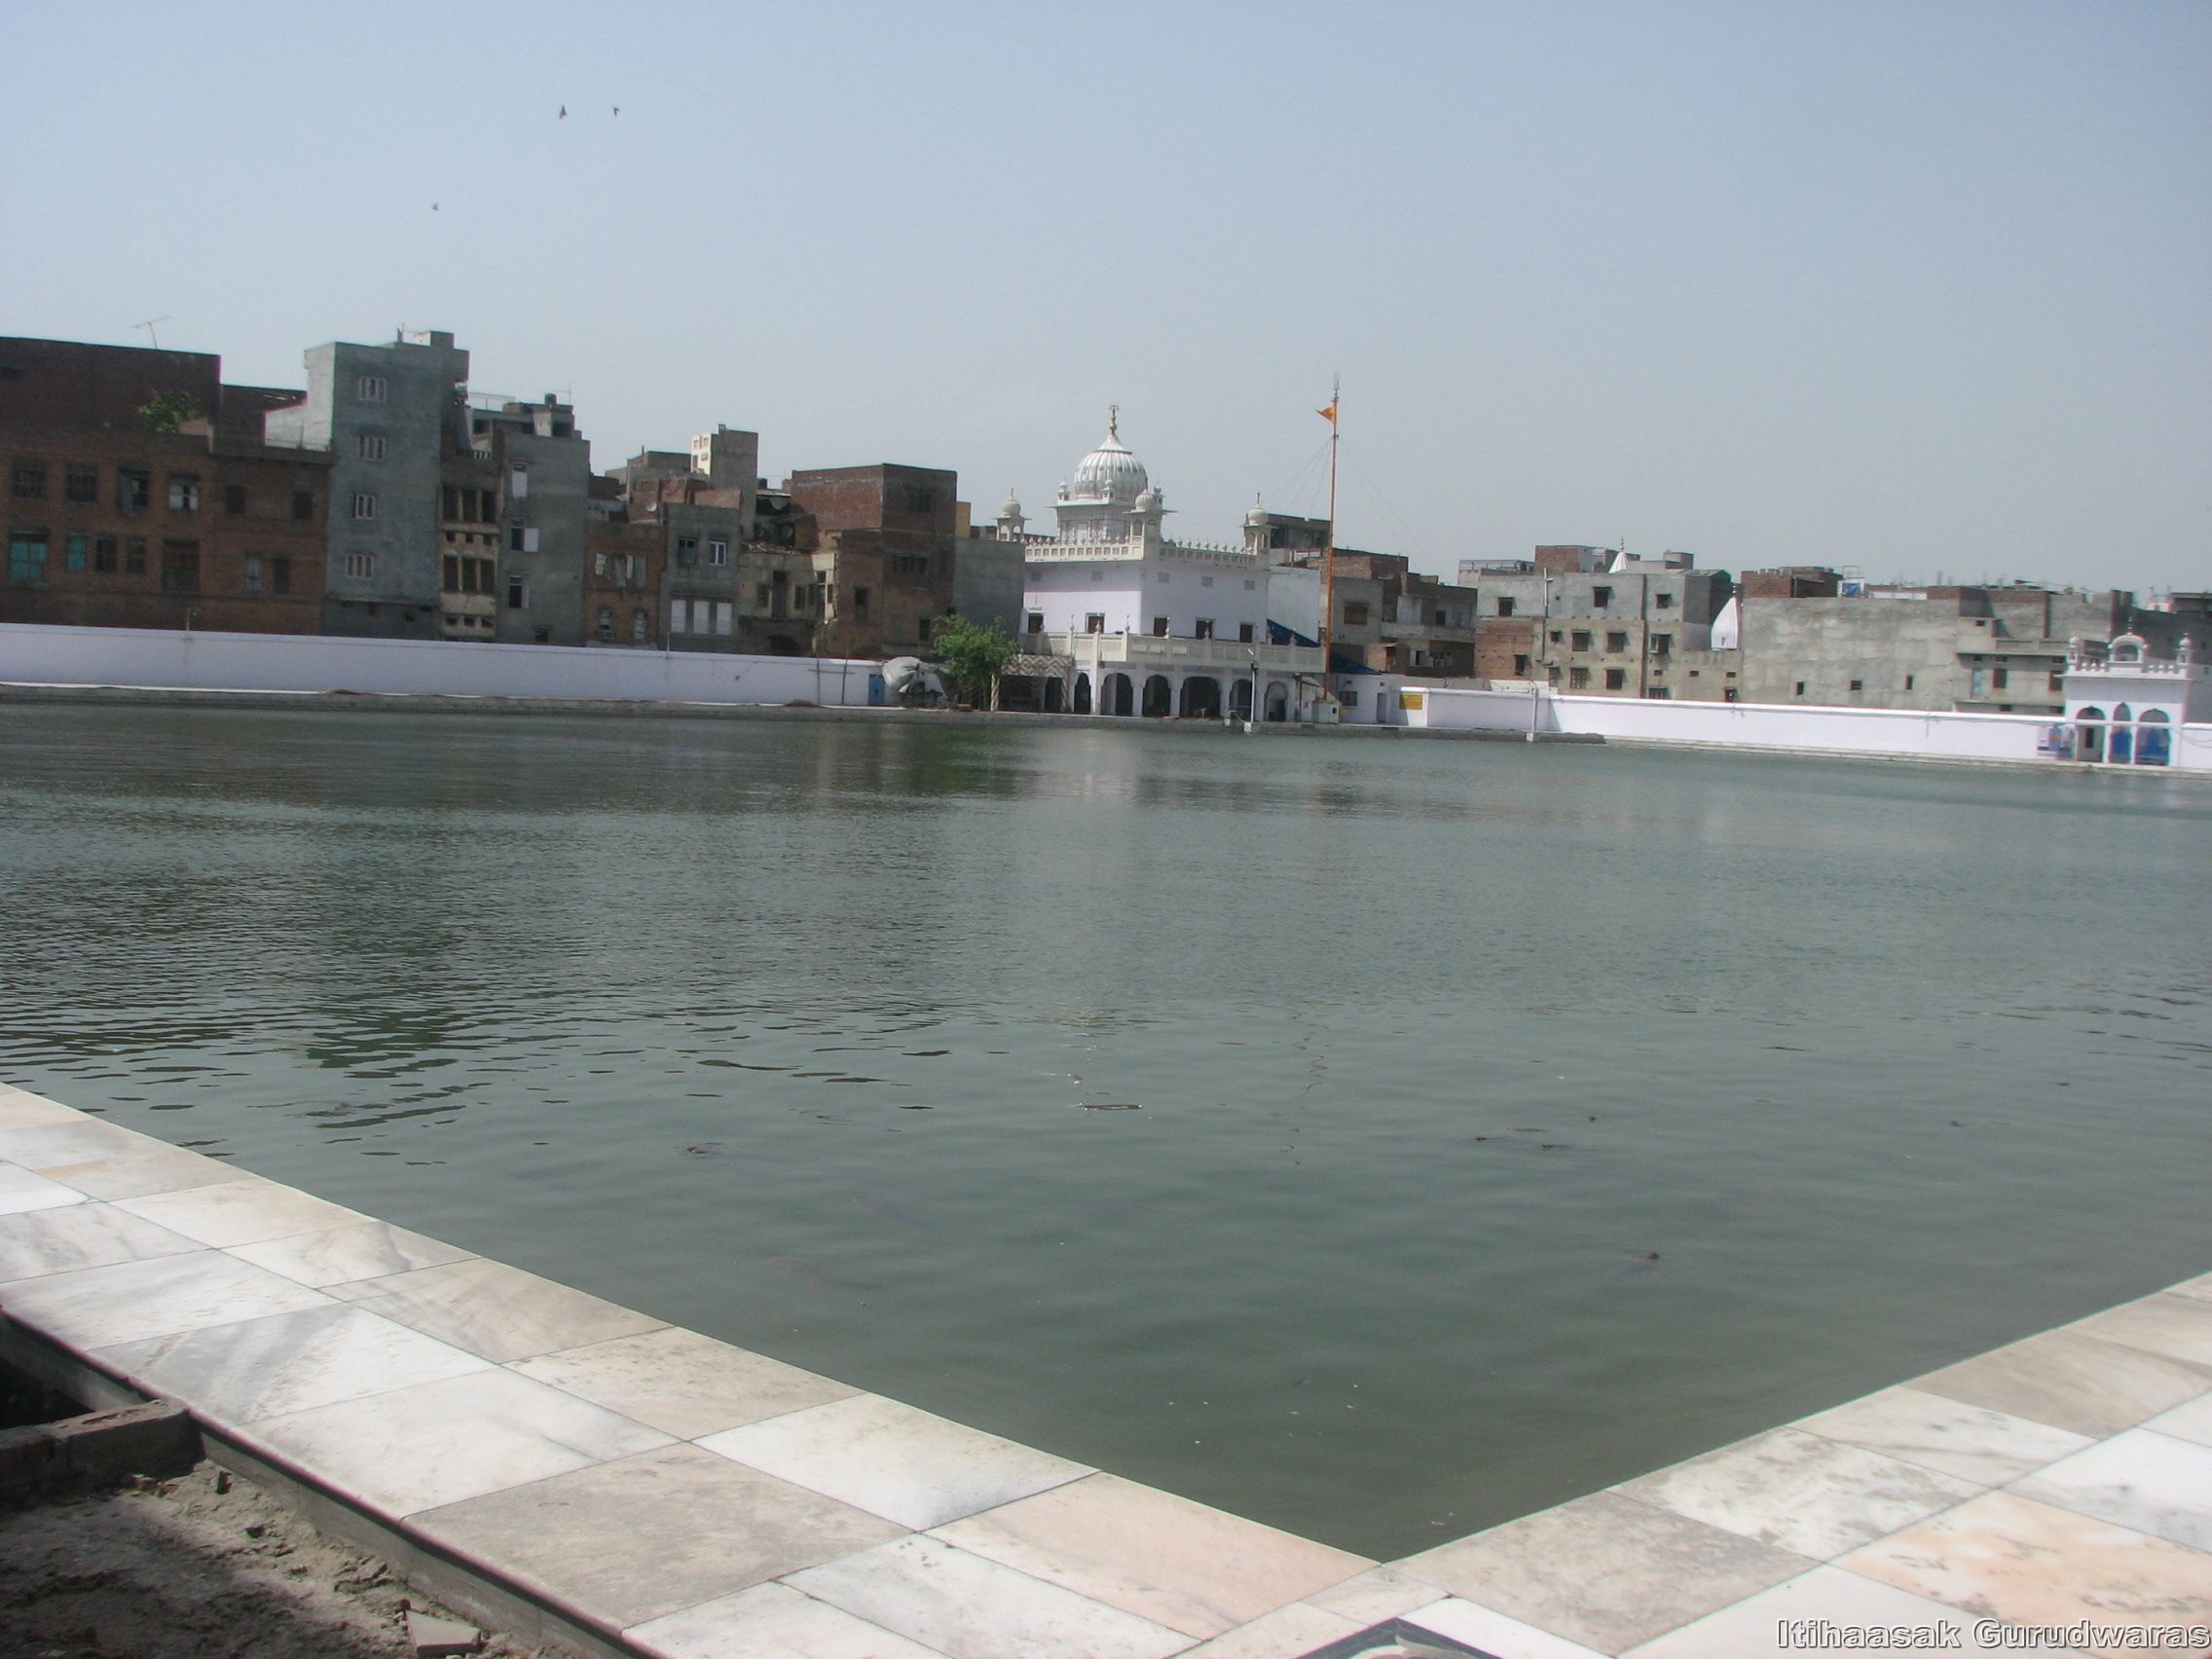 Gurudwara Sri Santokhsar Sahib, Amritsar